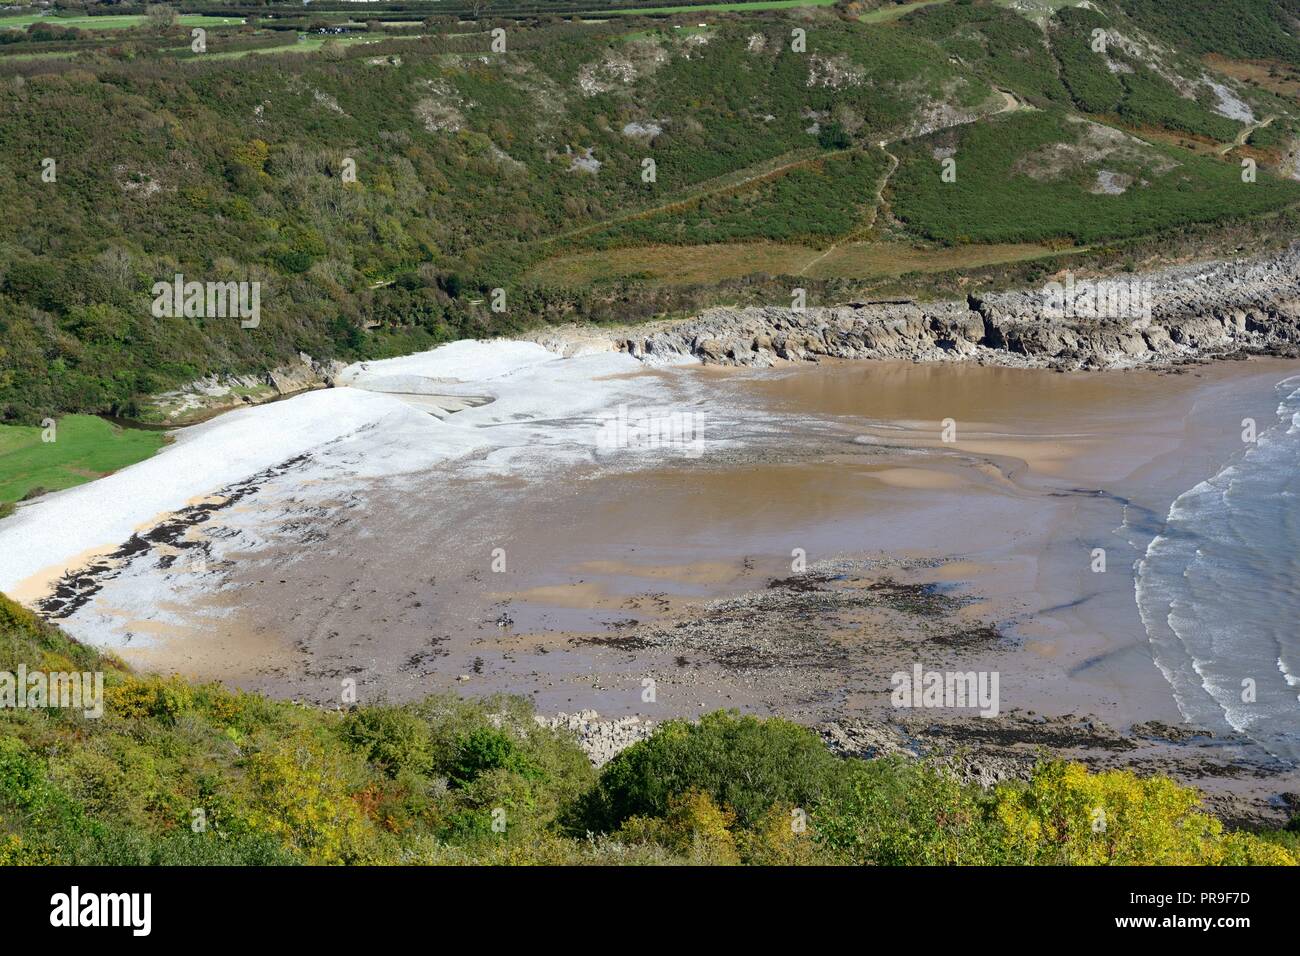 Pwll Du bay Pwlldu beach cove gallois à distance isolée au sud de la péninsule de Gower Swansea Pays de Galles Cymru UK Banque D'Images